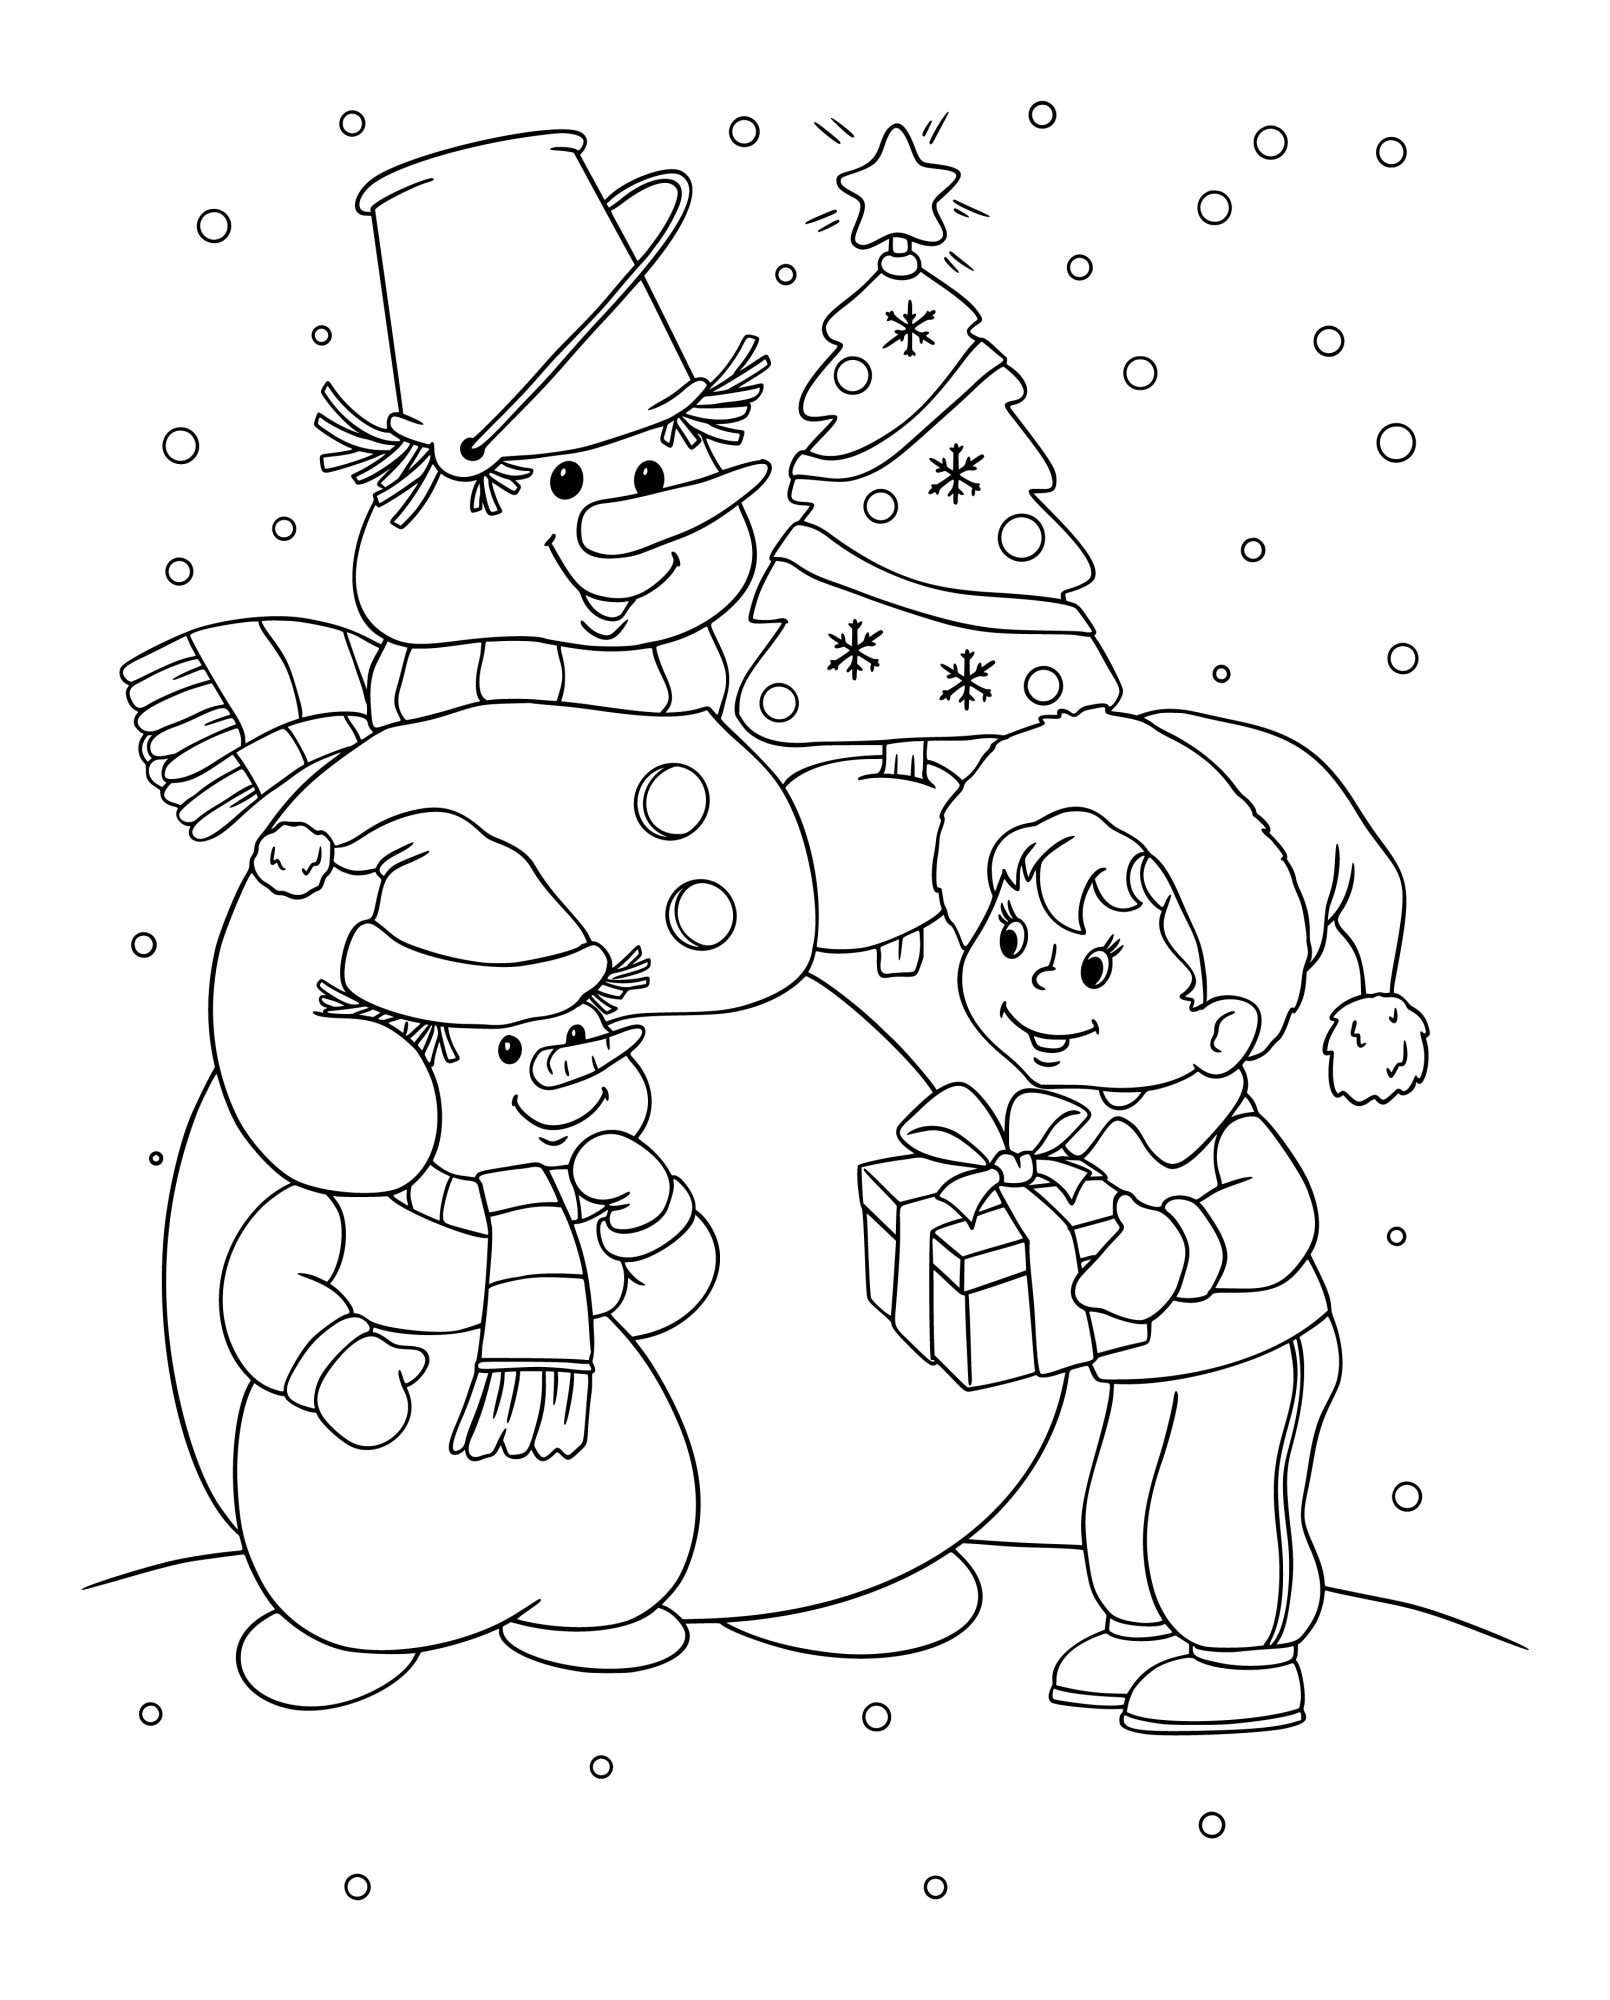 Раскраска для детей: большой снеговик с елочкой в руках разговаривает с мальчиком